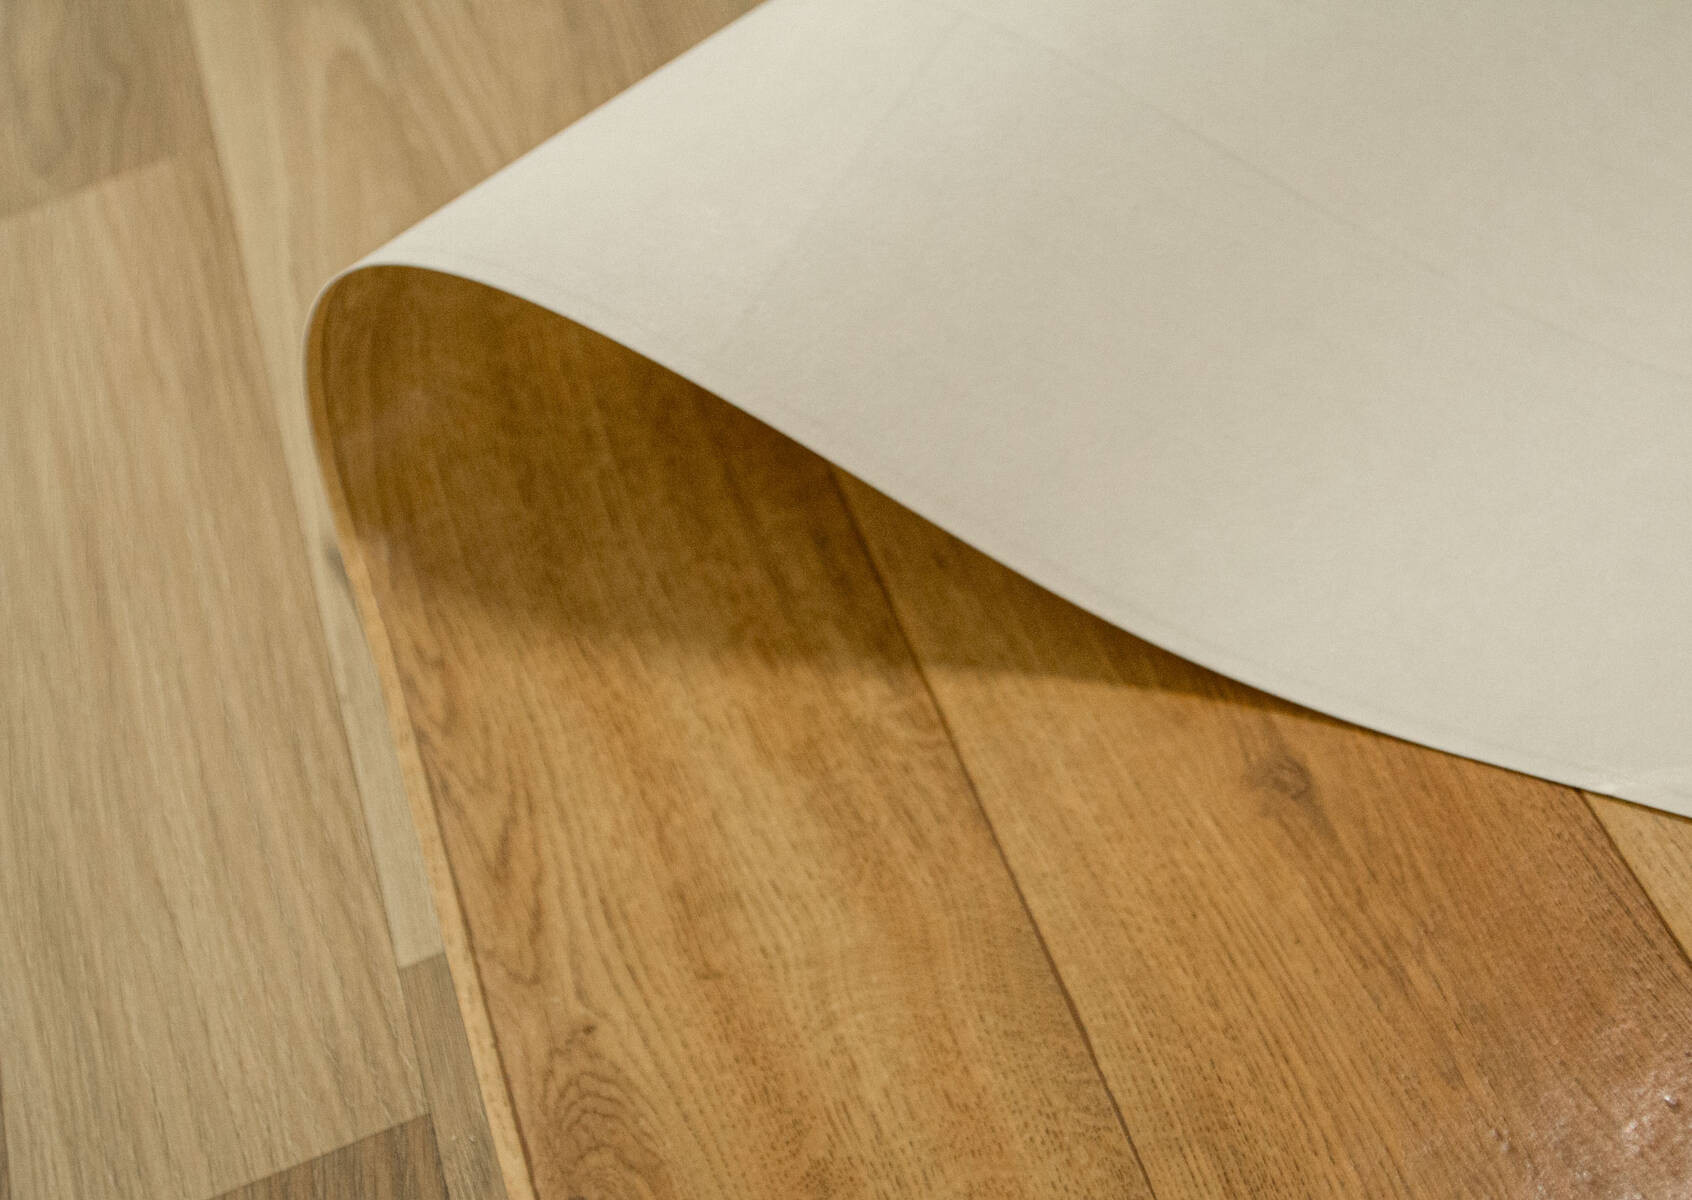 PVC podlaha Start Plank 069L desky, hnědá